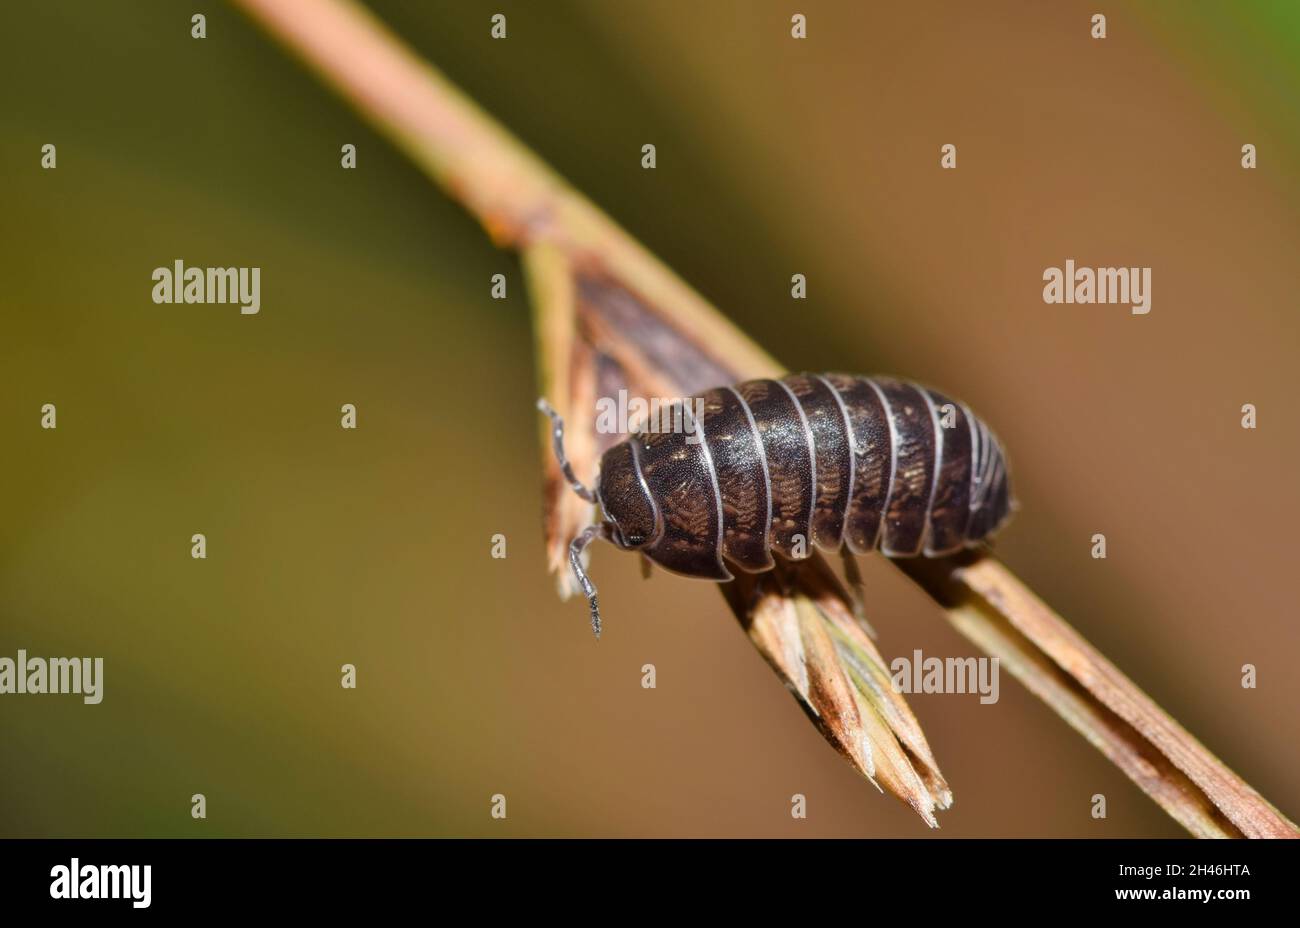 Gewöhnliche Sau Bug auf einem Pflanzenstiel. Krustentiere, die nachts sehr aktiv sind und für den Menschen harmlos sind. Stockfoto